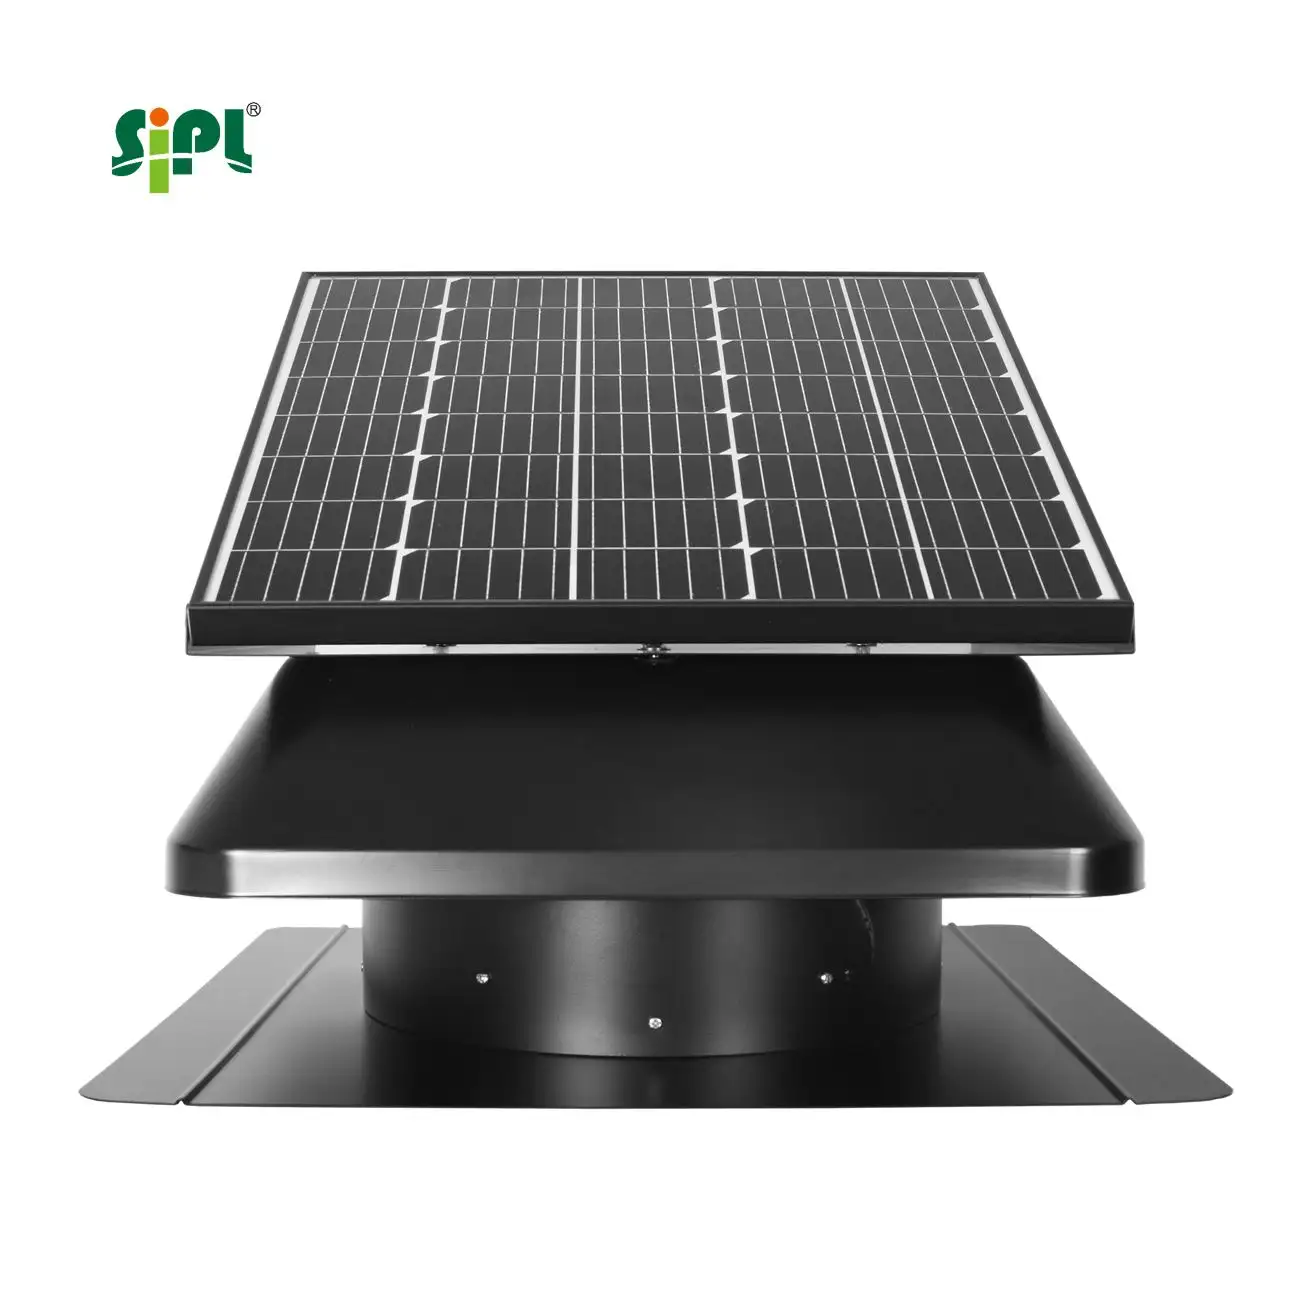 Puissant moteur à courant continu sans balais 50W ~ 60W toit de grenier solaire Turbo Ventilation Turbine ventilateur d'extraction de toit pour entrepôt/usine